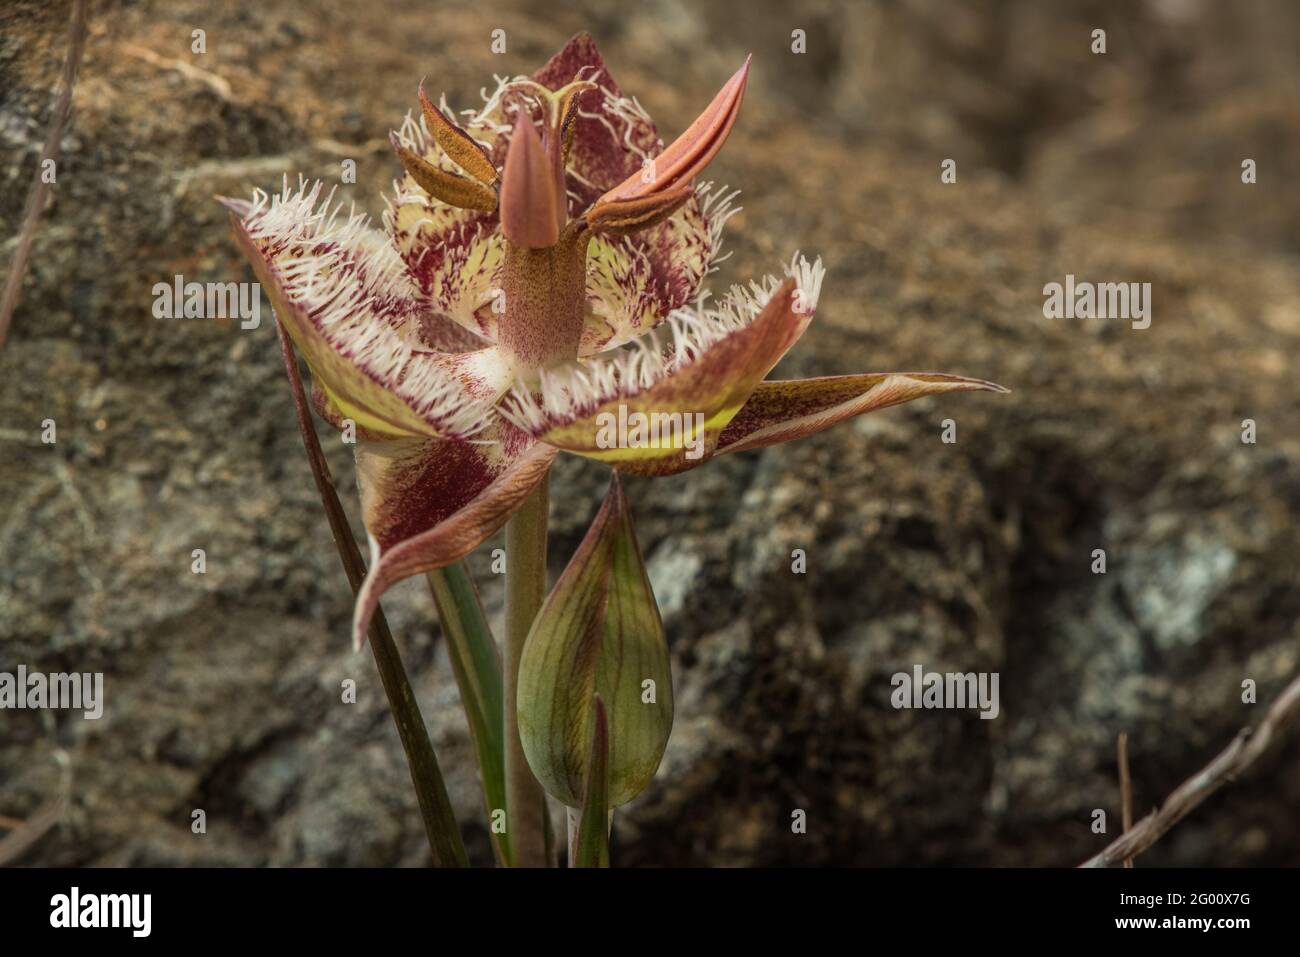 Tiburon Mariposa Lily (Calochortus tiburonensis) una pianta rara endemica della Riserva del Monte anello, nell'area della Baia di San Francsisco in California. Foto Stock